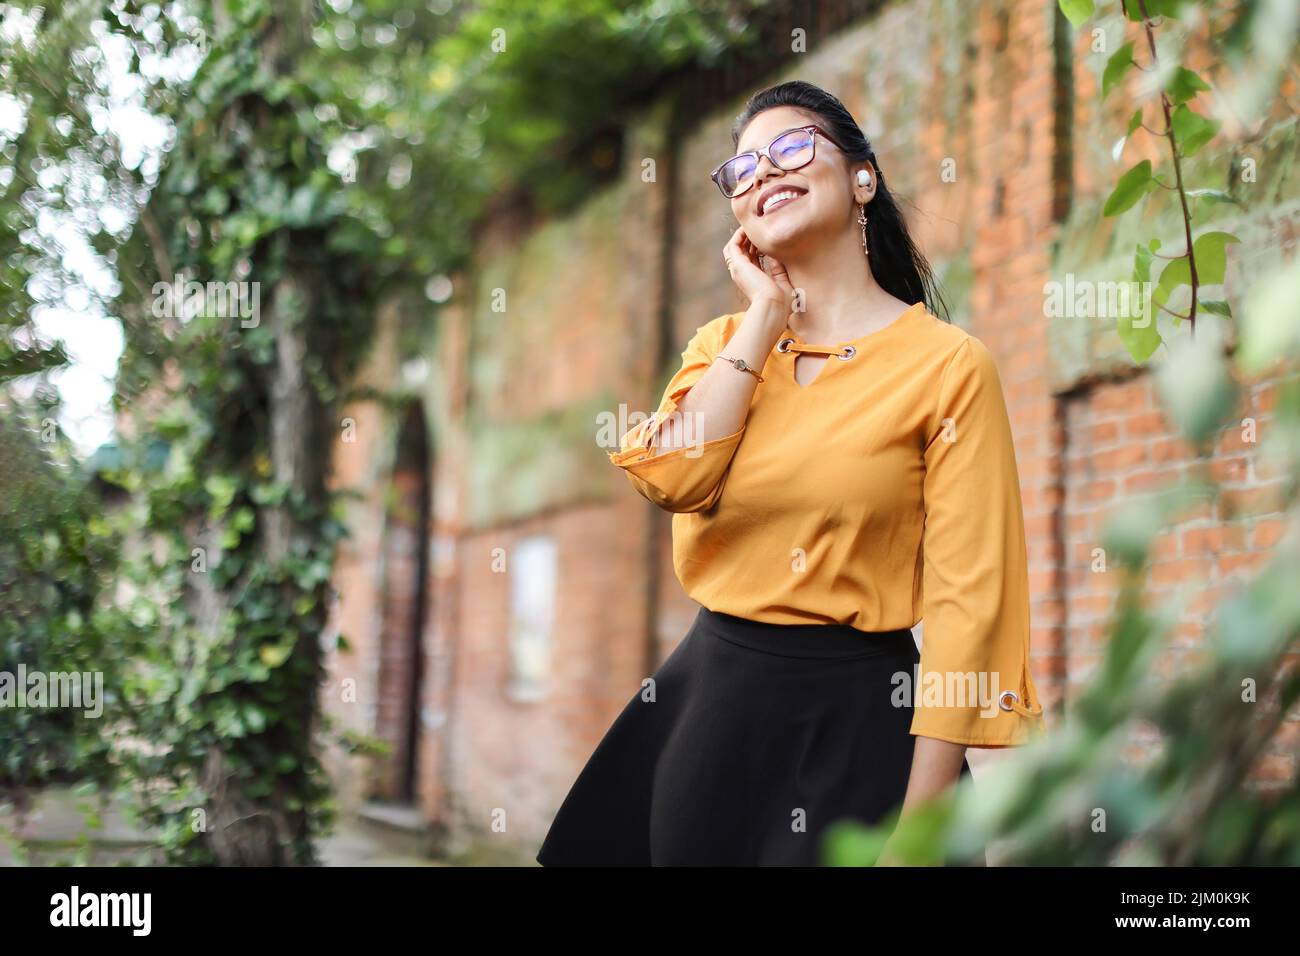 Junge lateinamerikanische Frau mit Brille und Ohrstöpseln, die lächelnd mit Blättern aufschaut, um Platz für Kopien zu schaffen Stockfoto